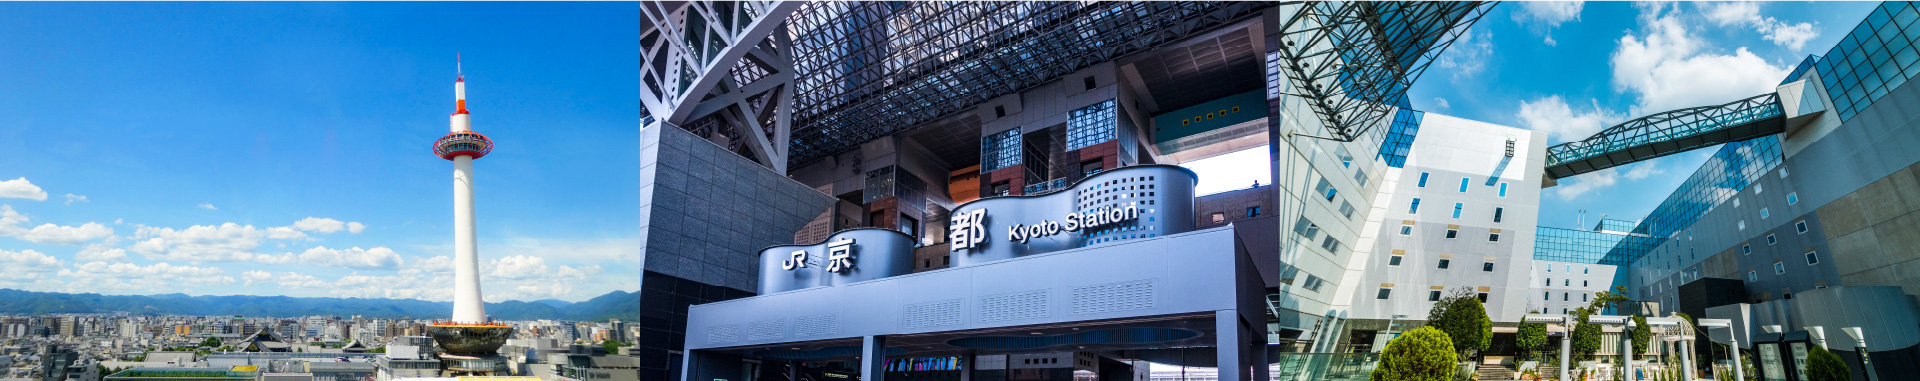 京都駅の美しい景観